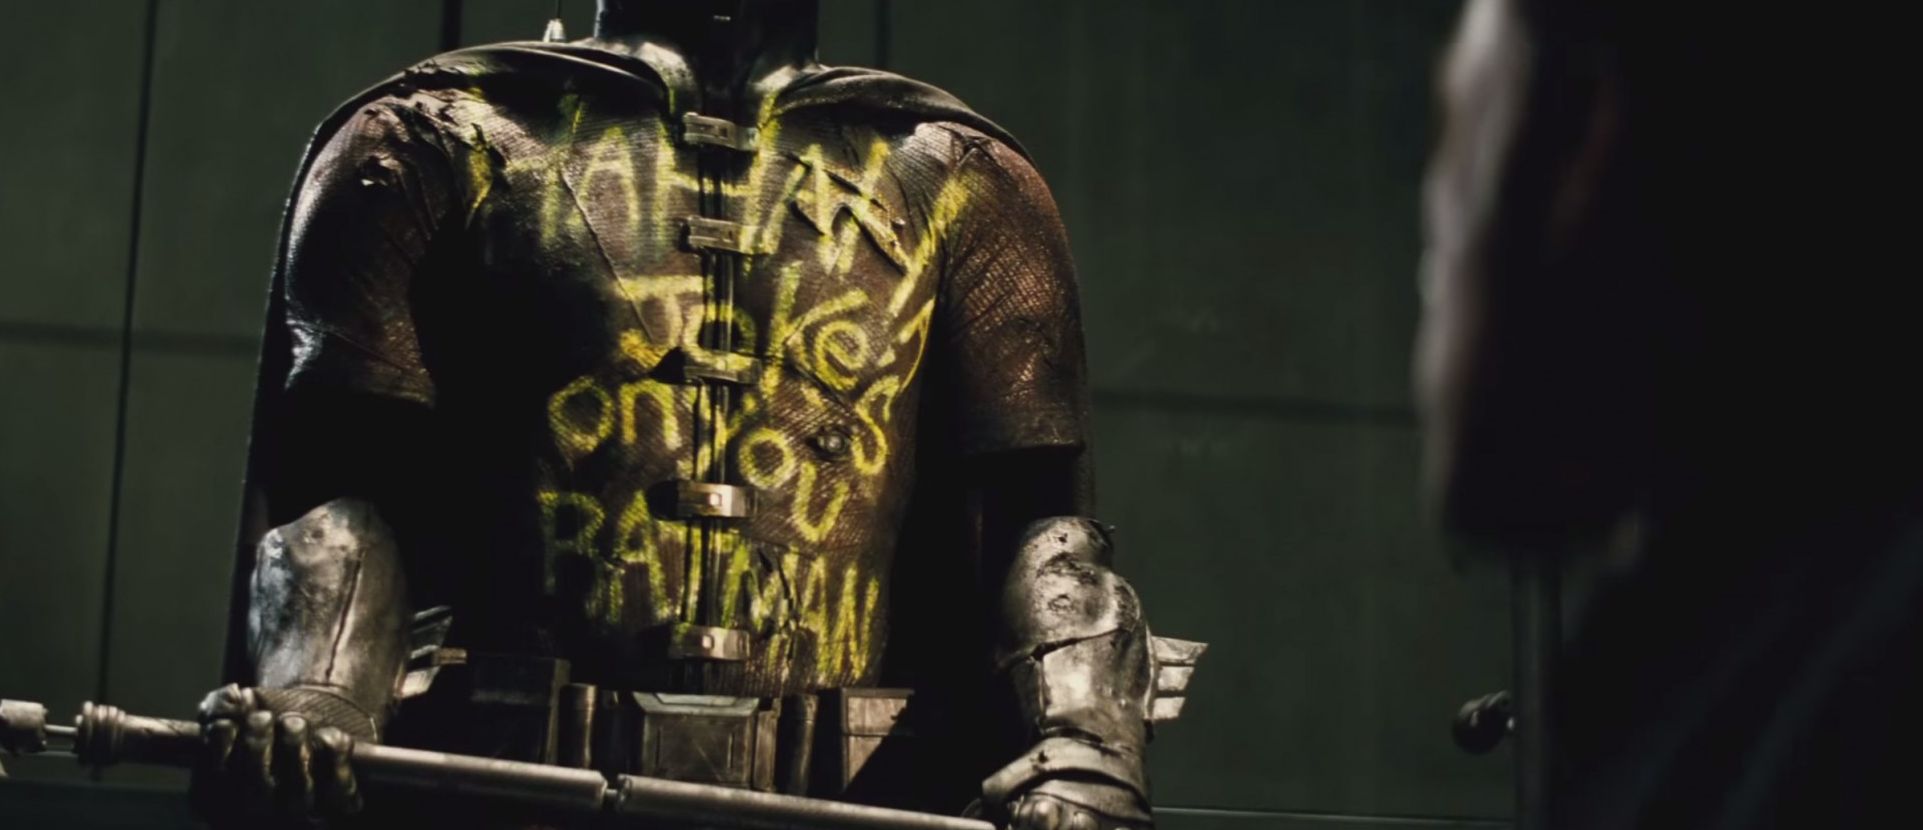 "The Jokes on you Batman" Robin Suit Graffiti